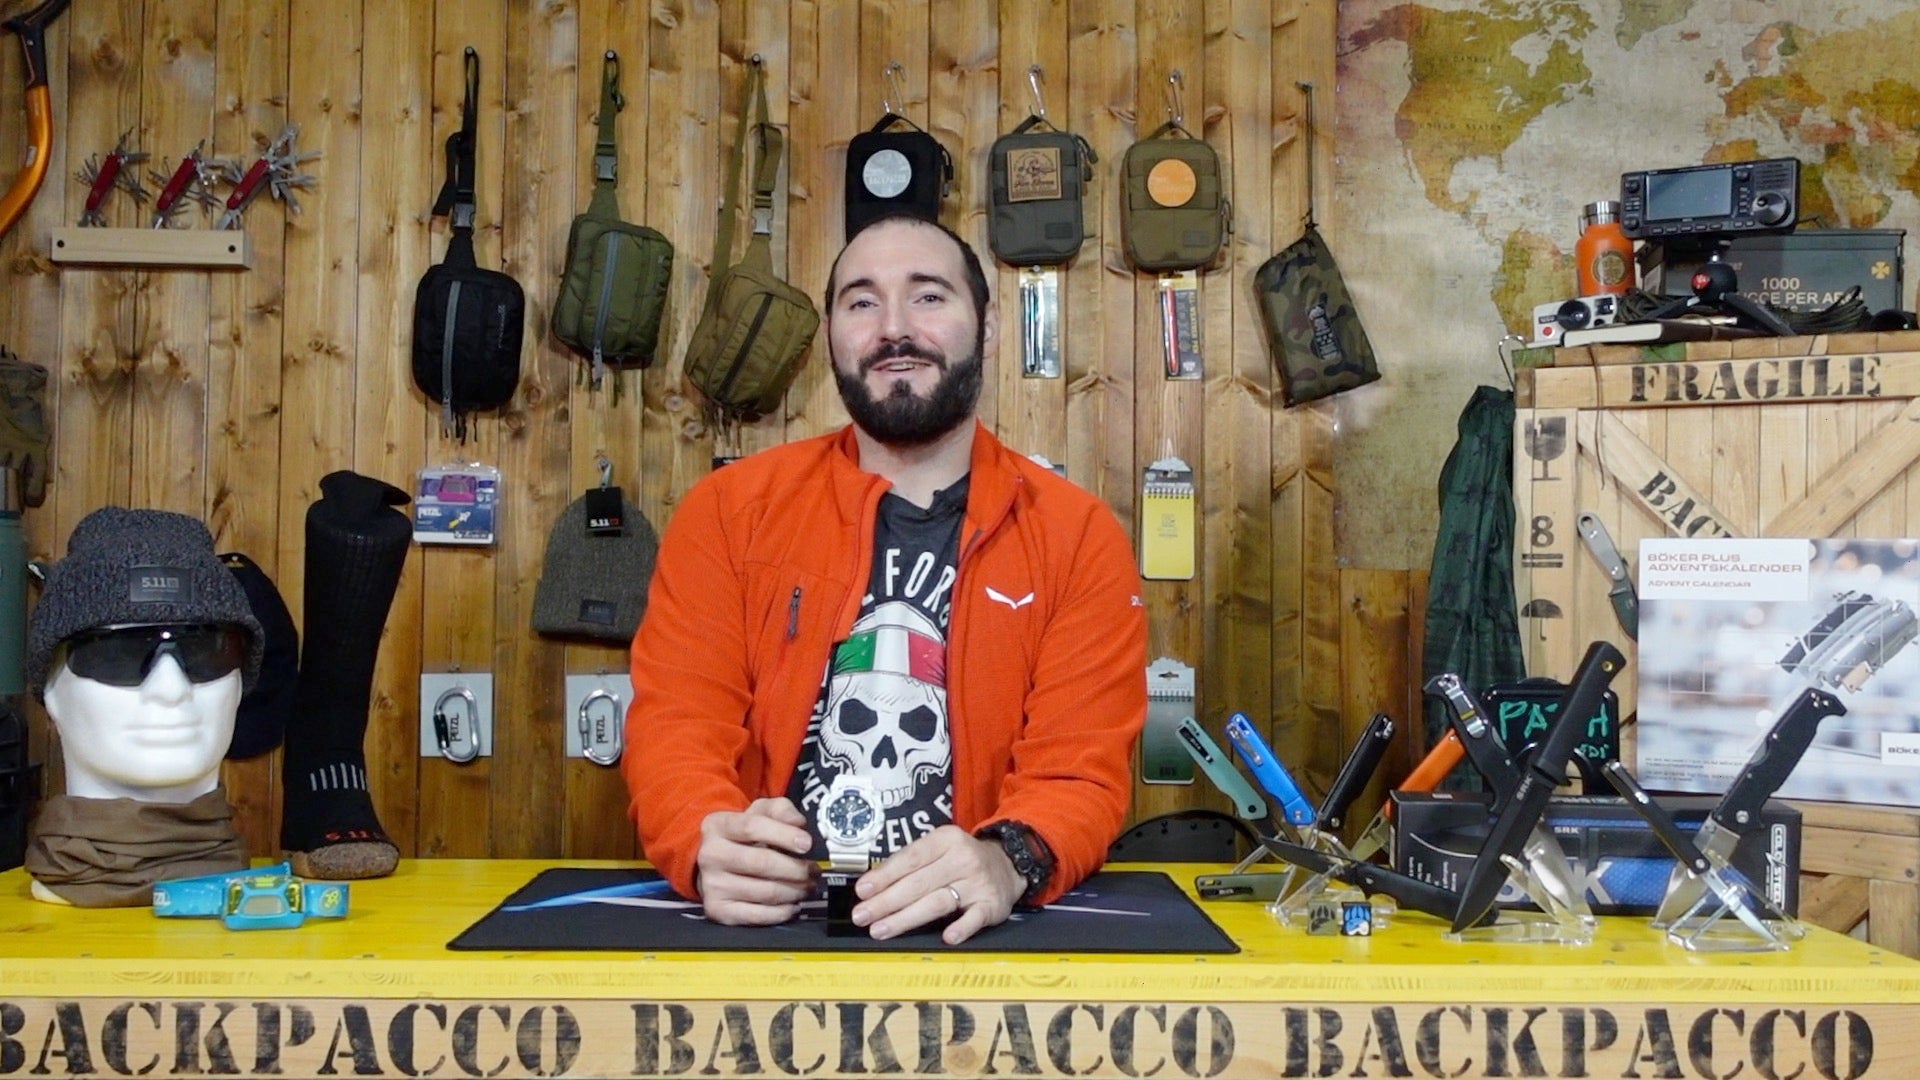 Paolo di backpacco spiega il G-SHOCK GA-100B-7AER